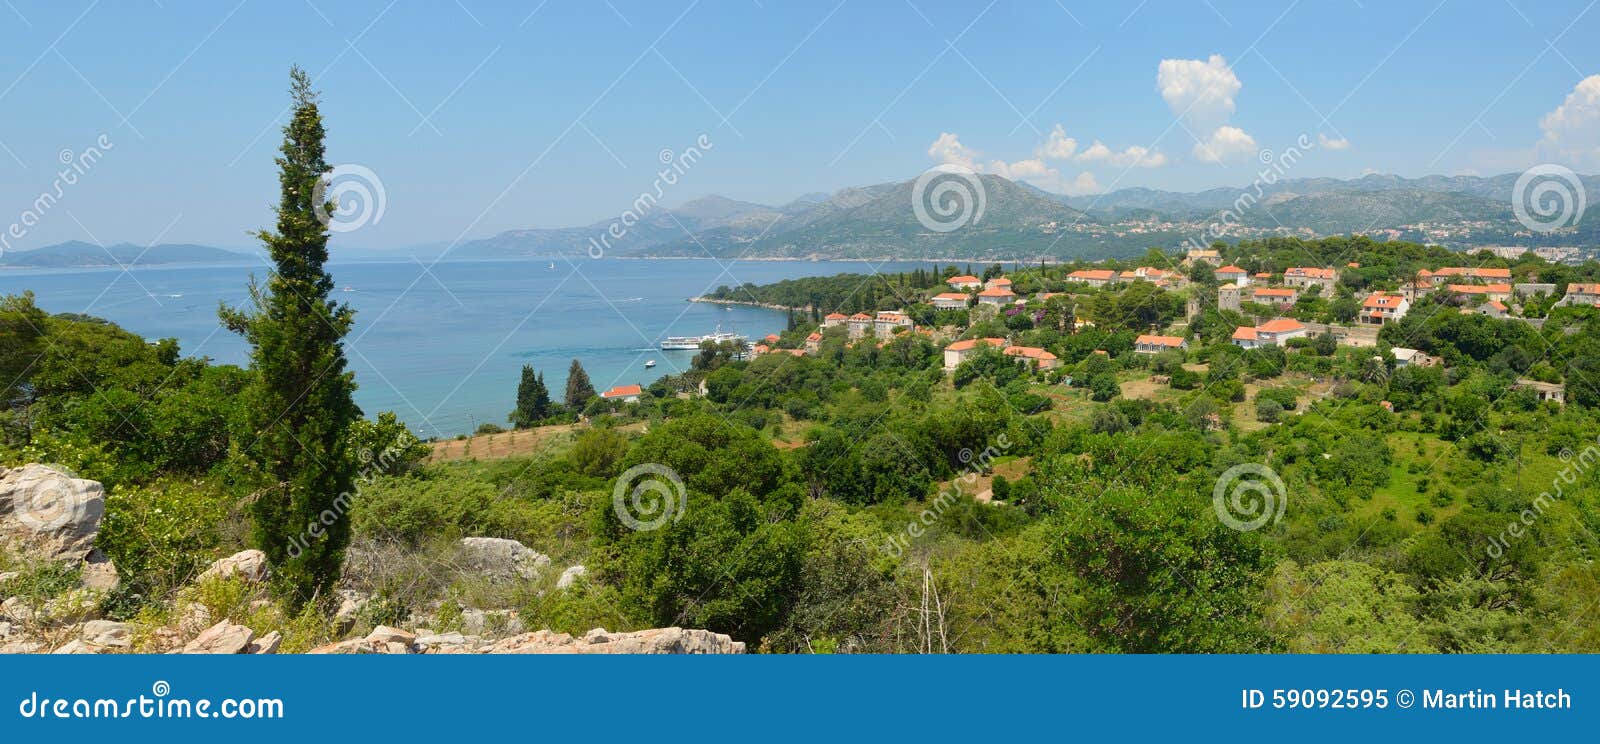 croatian island of kolocep